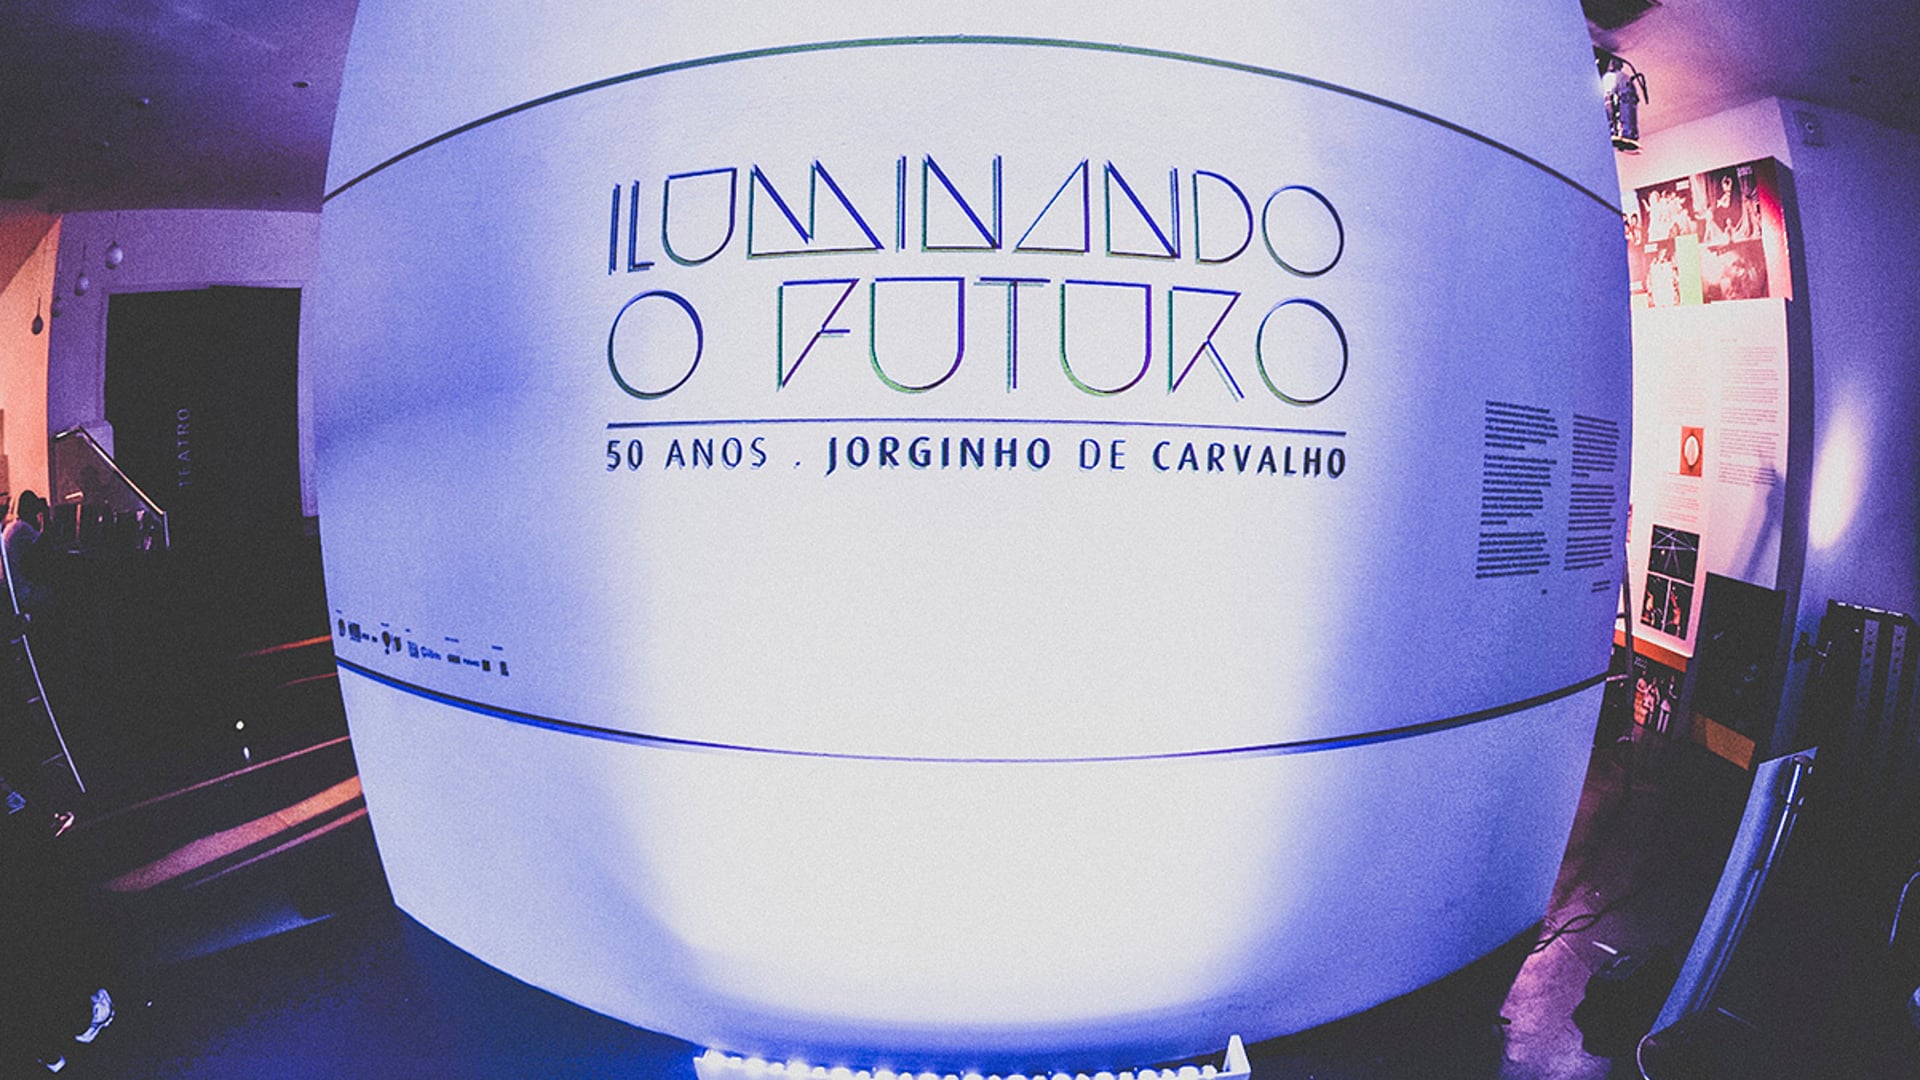 Iluminando o Futuro - 50 Anos, Jorginho de Carvalho